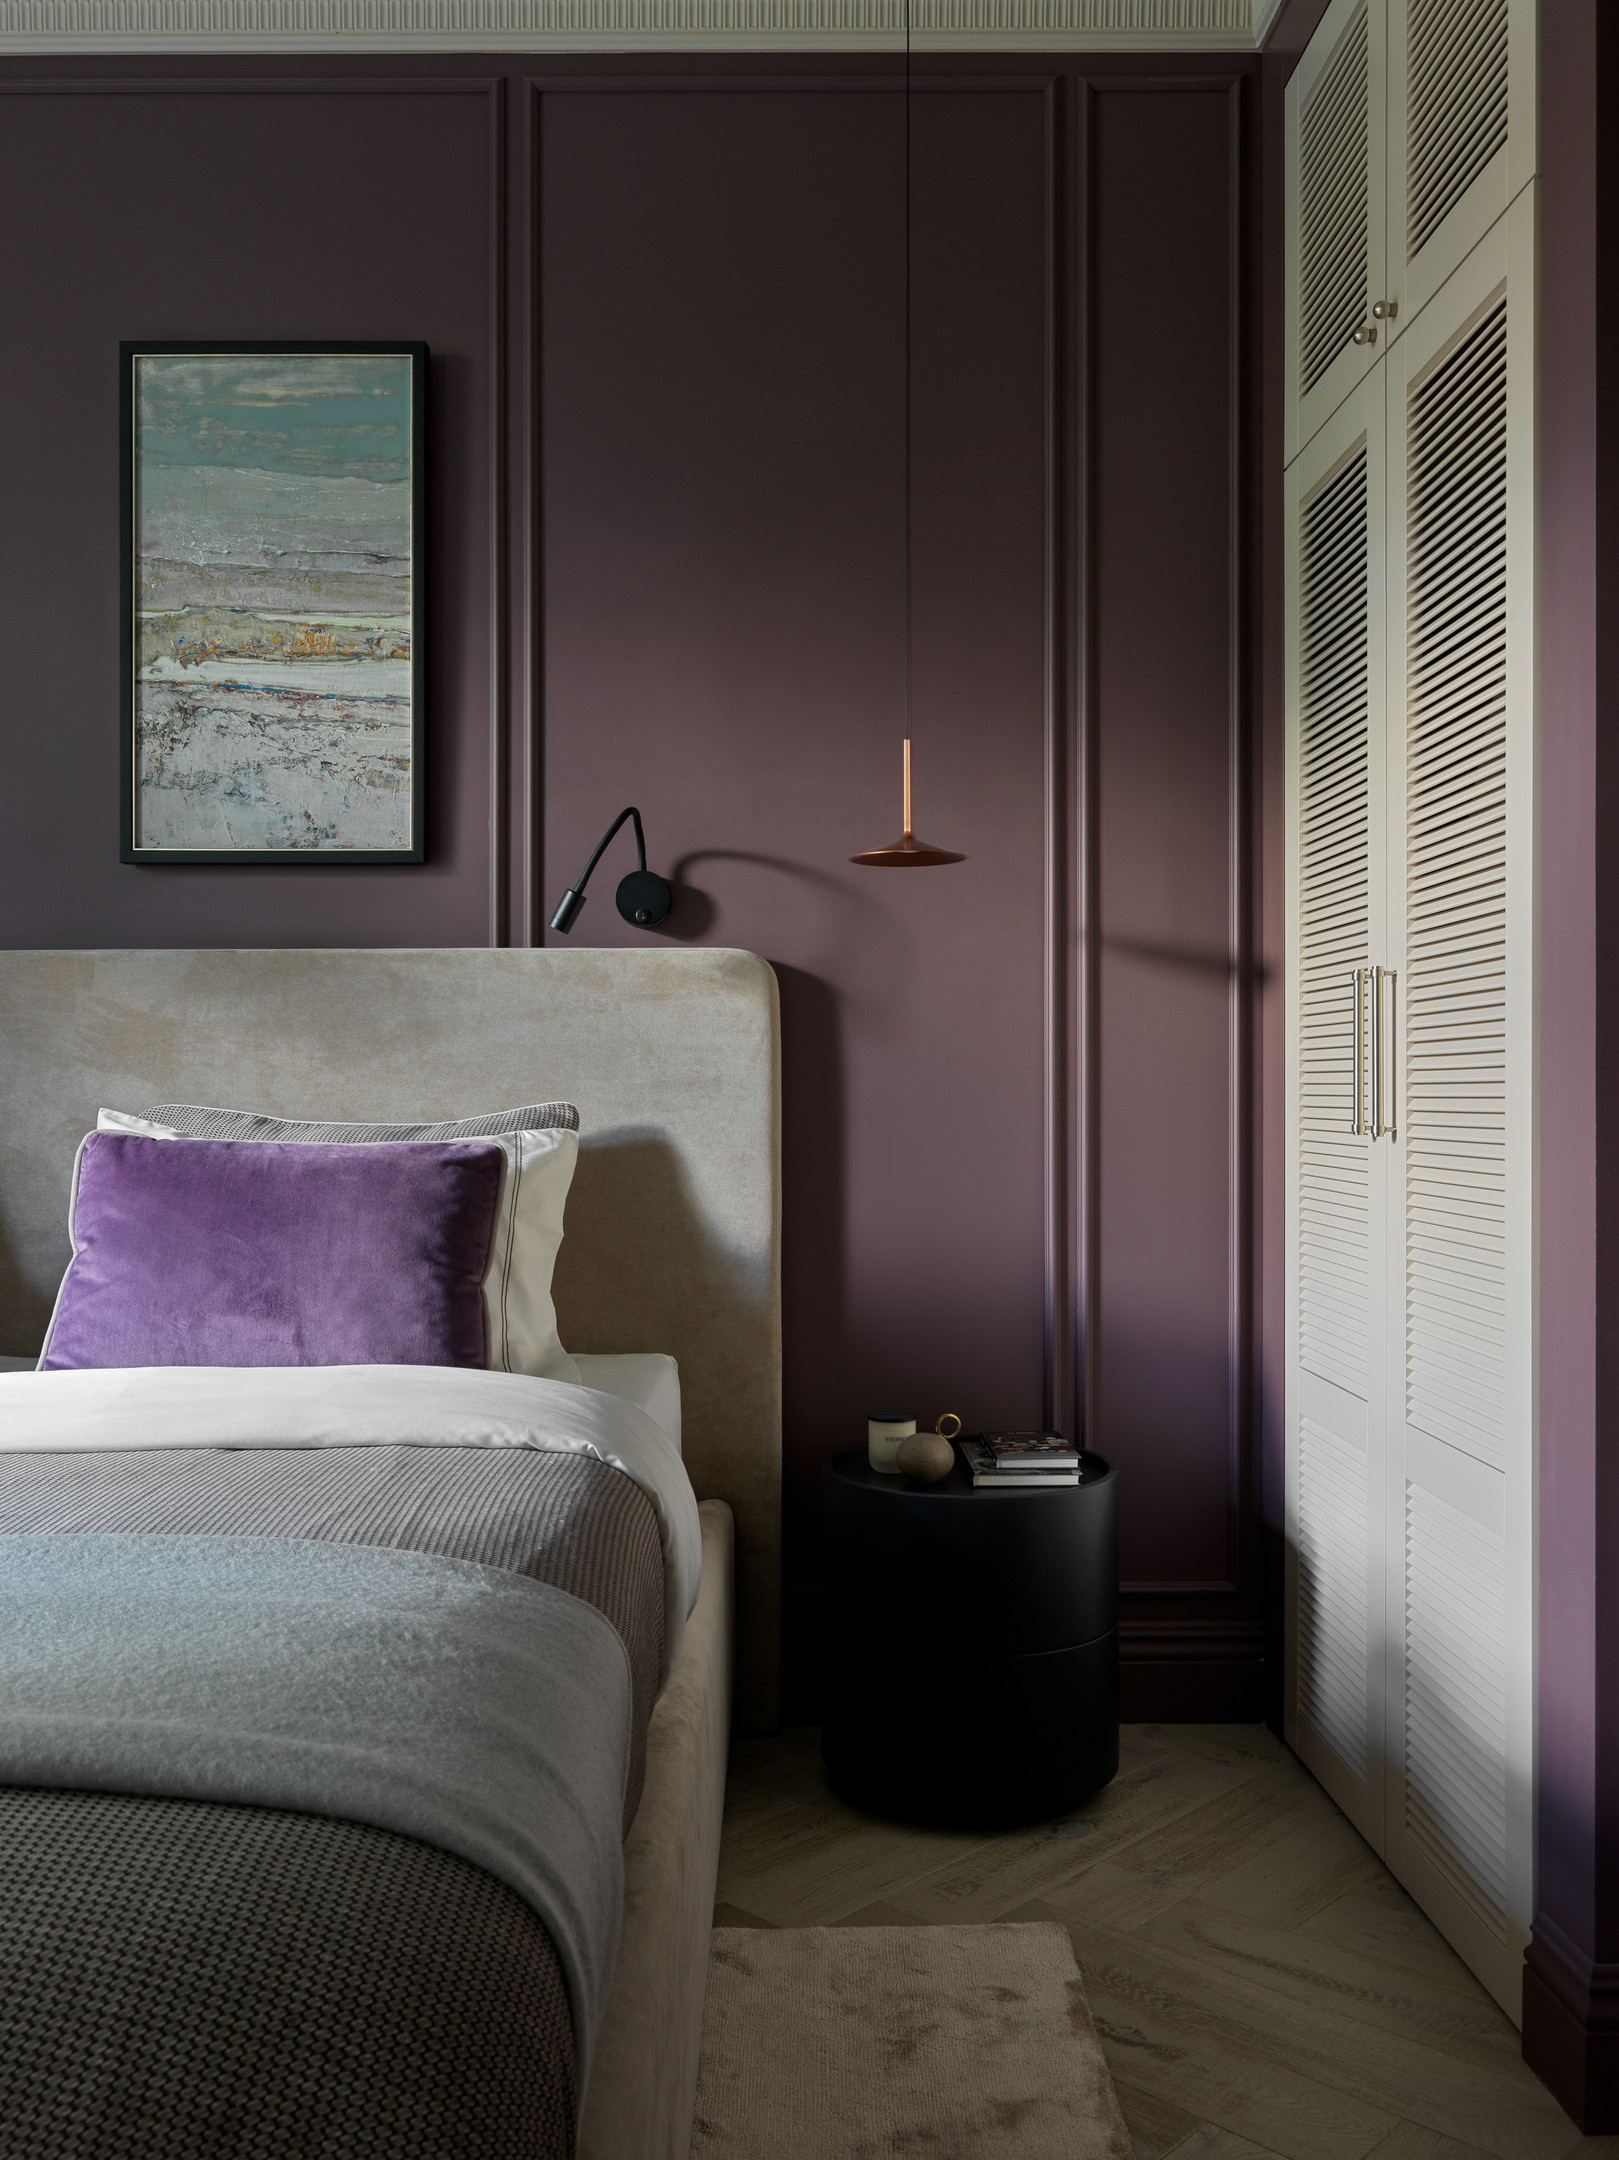 Tone màu tím trầm ấm là lựa chọn tuyệt vời cho phòng ngủ bởi nó mang lại cảm giác yên tĩnh và giảm căng thẳng hiệu quả.